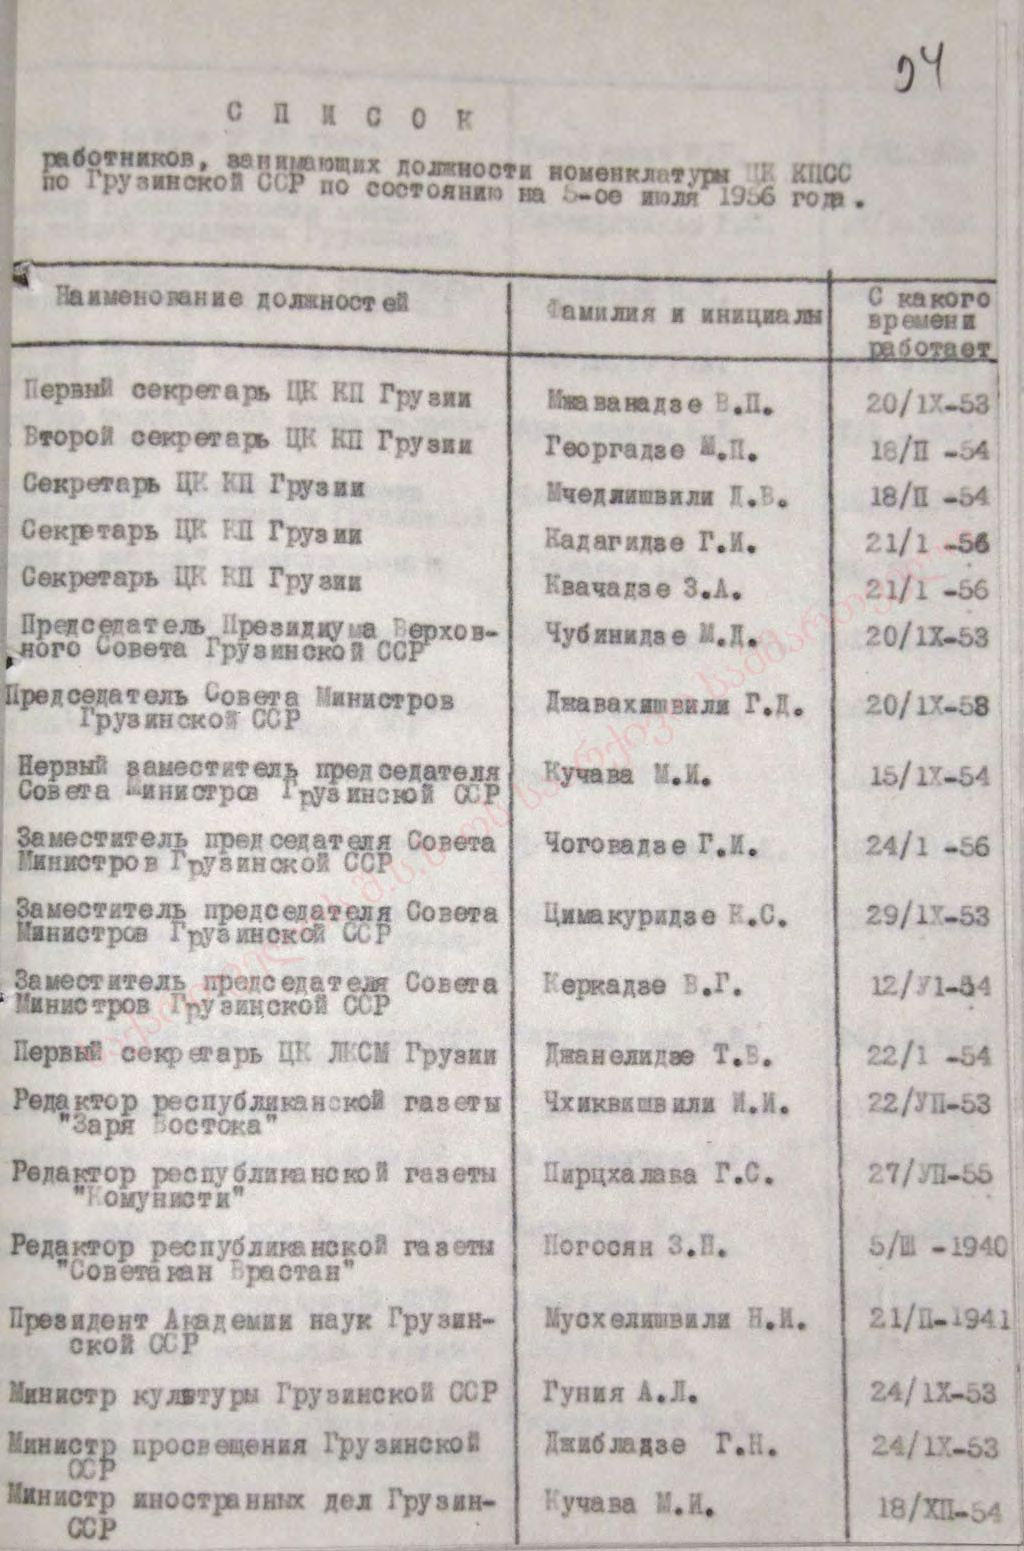 «Список работников, занимающих должности номенклатуры ЦК КПСС по Грузинской ССР по состоянию на 5 Июля 1956 года»  